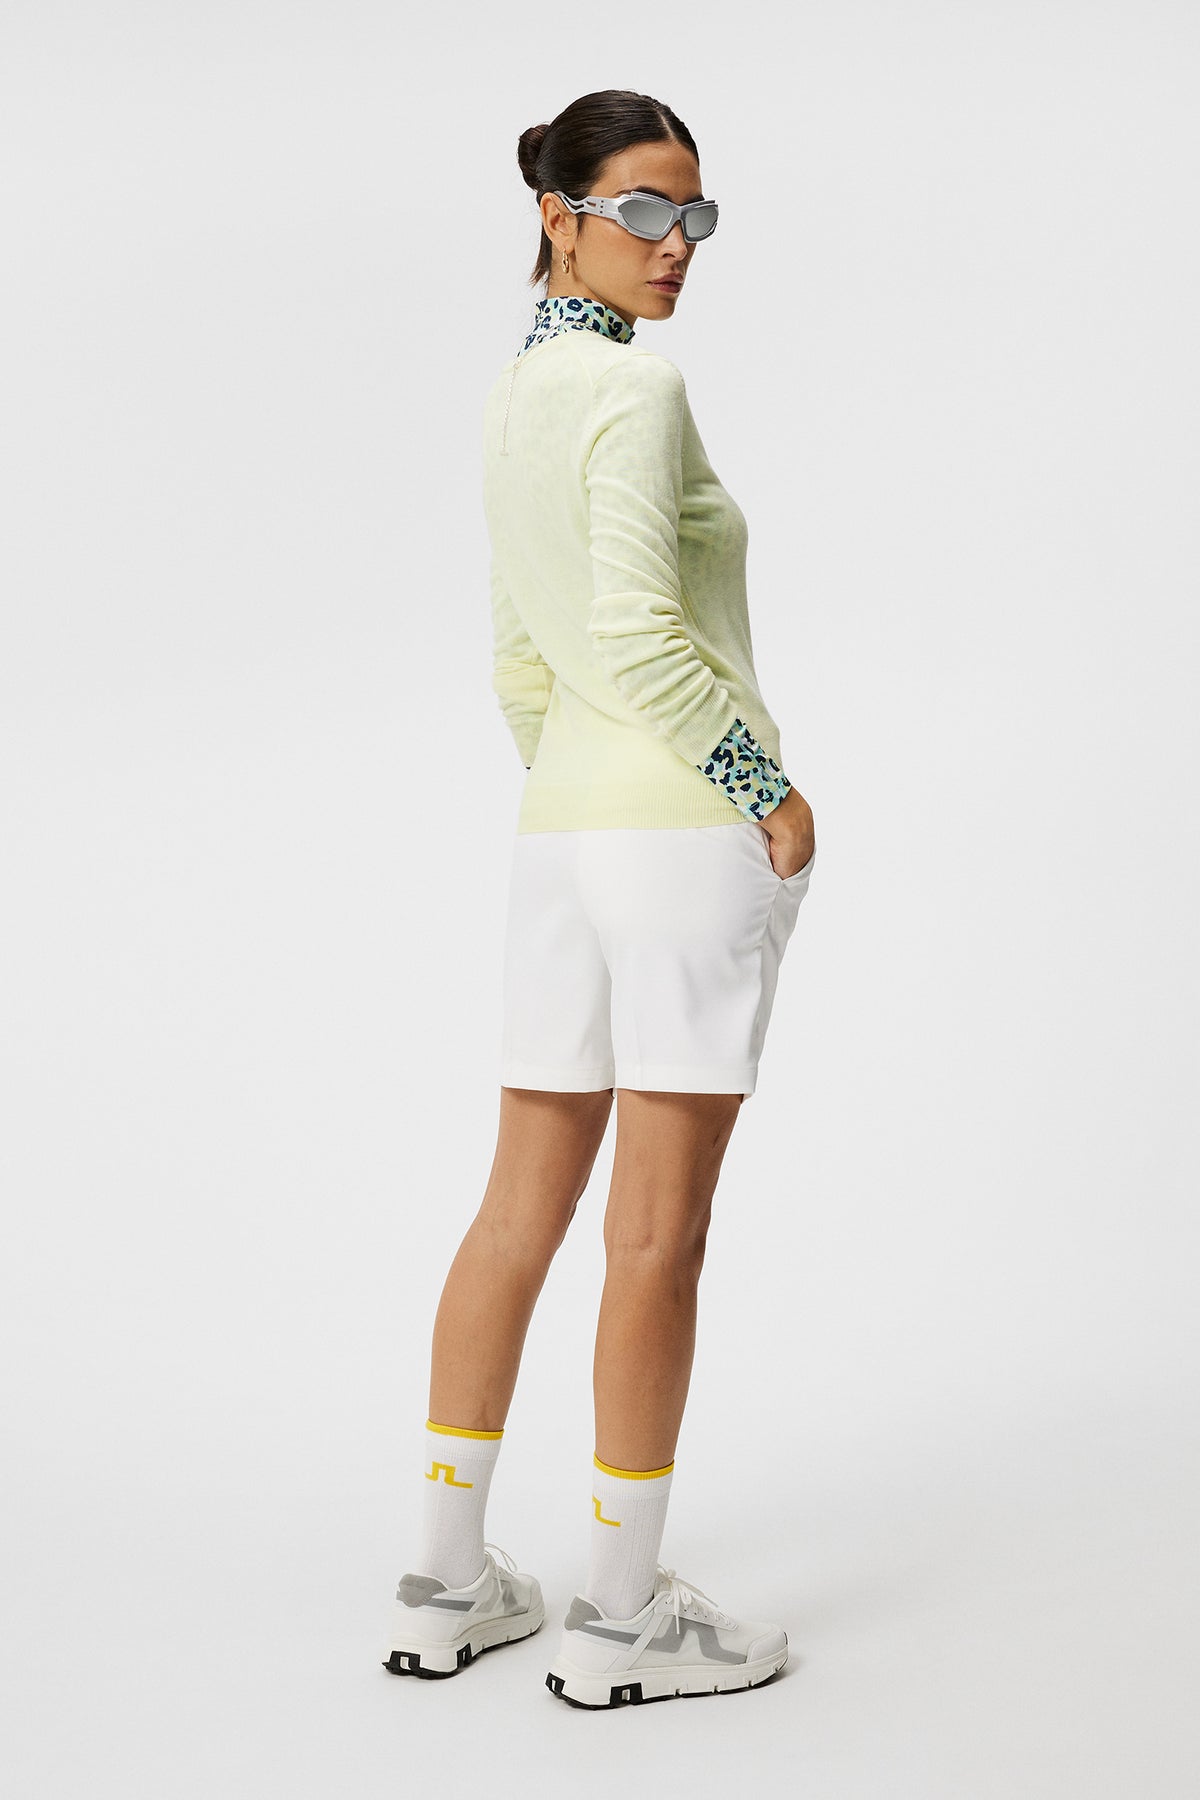 Amaya Knitted Sweater / Wax Yellow